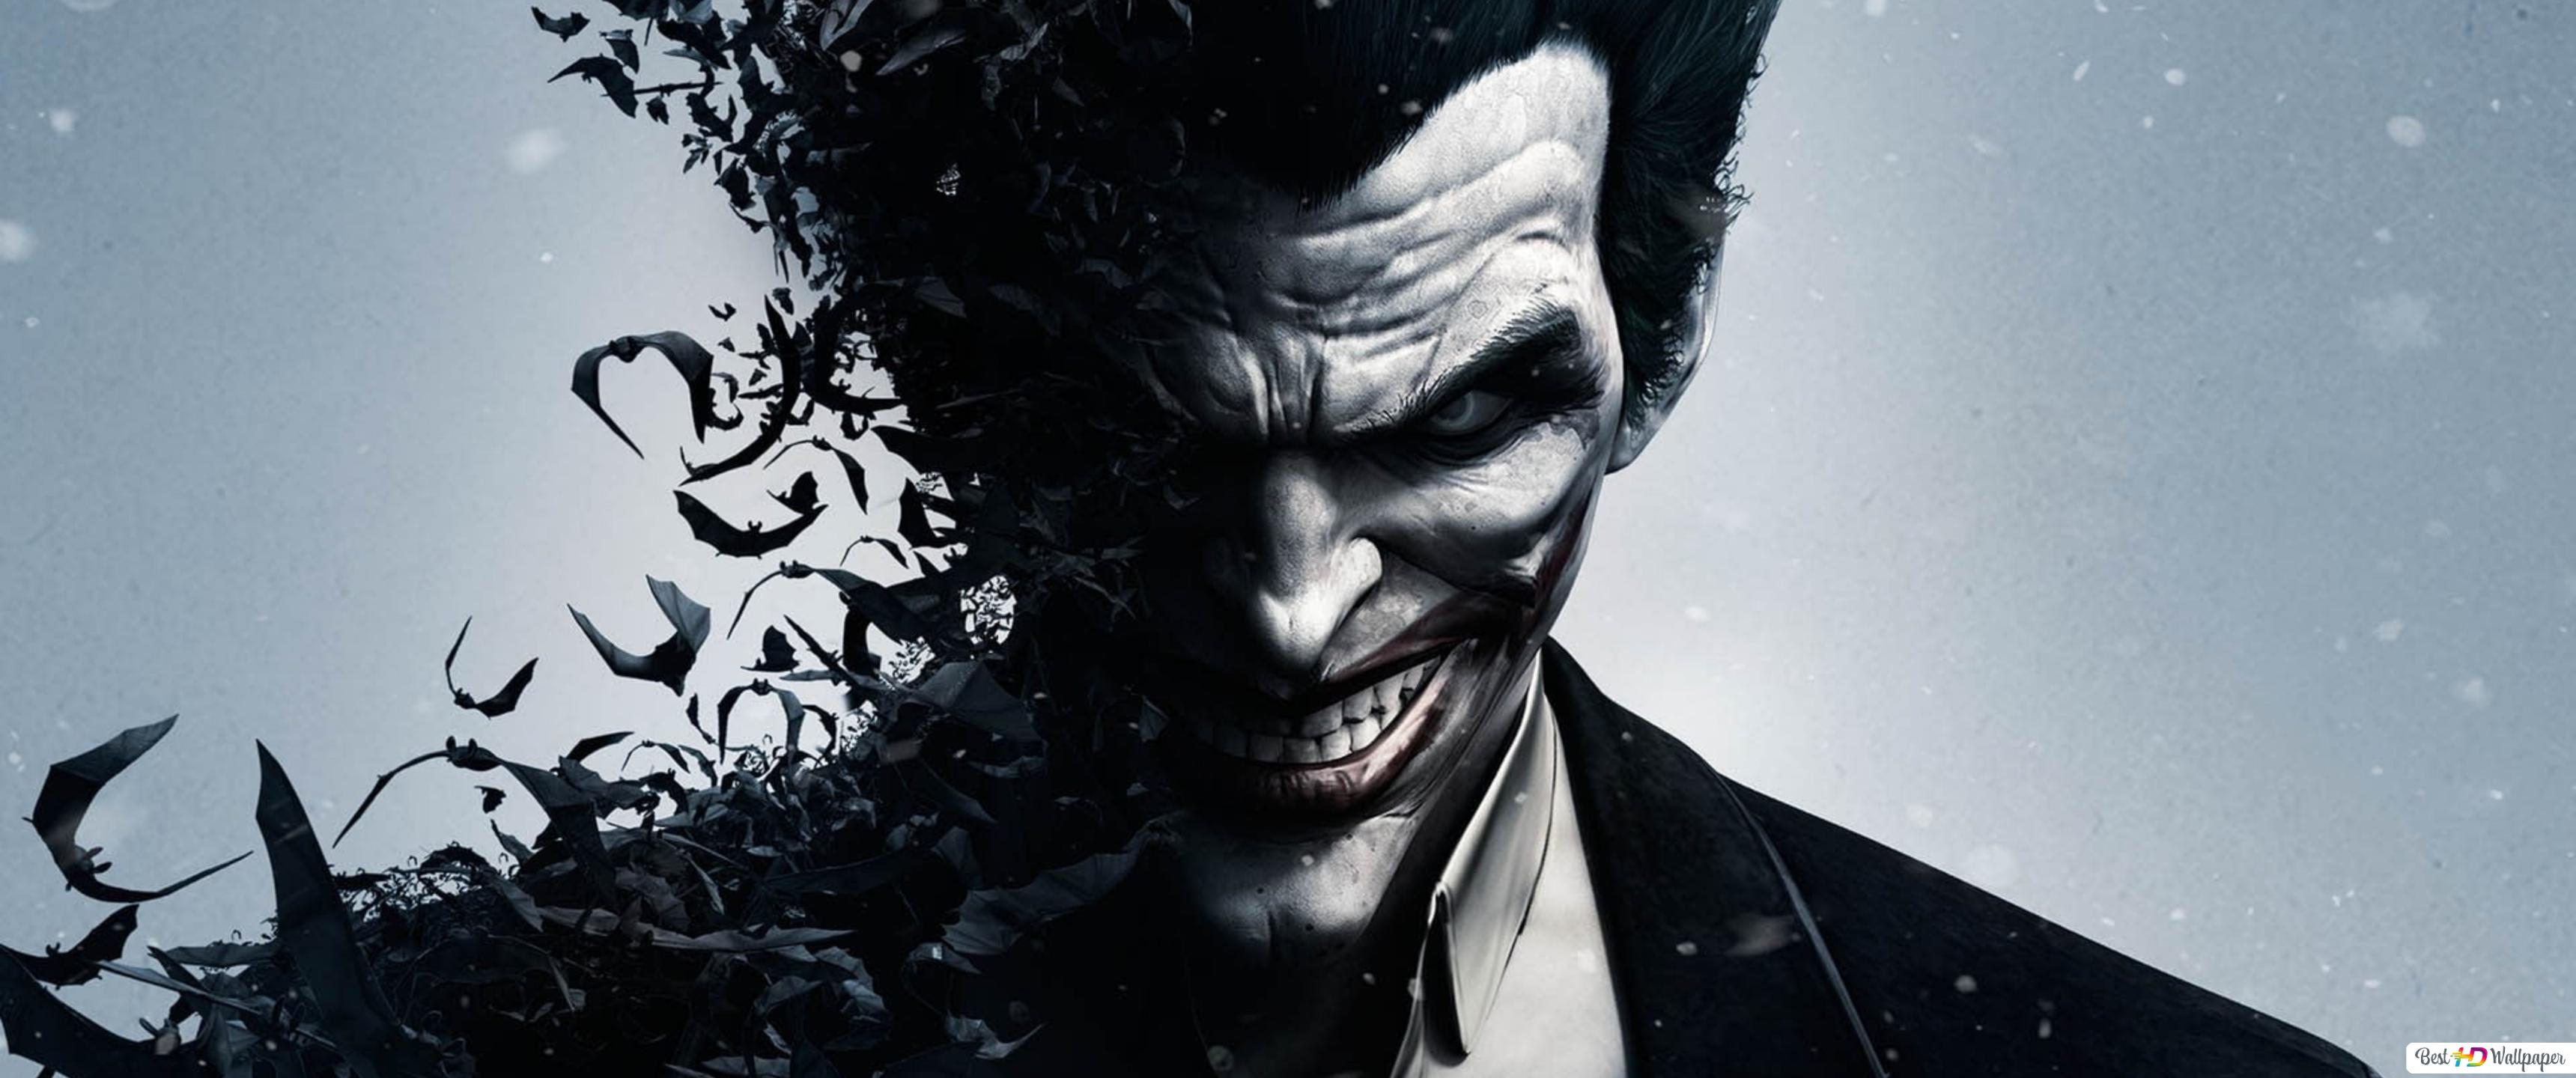 Joker looks evil HD wallpaper download